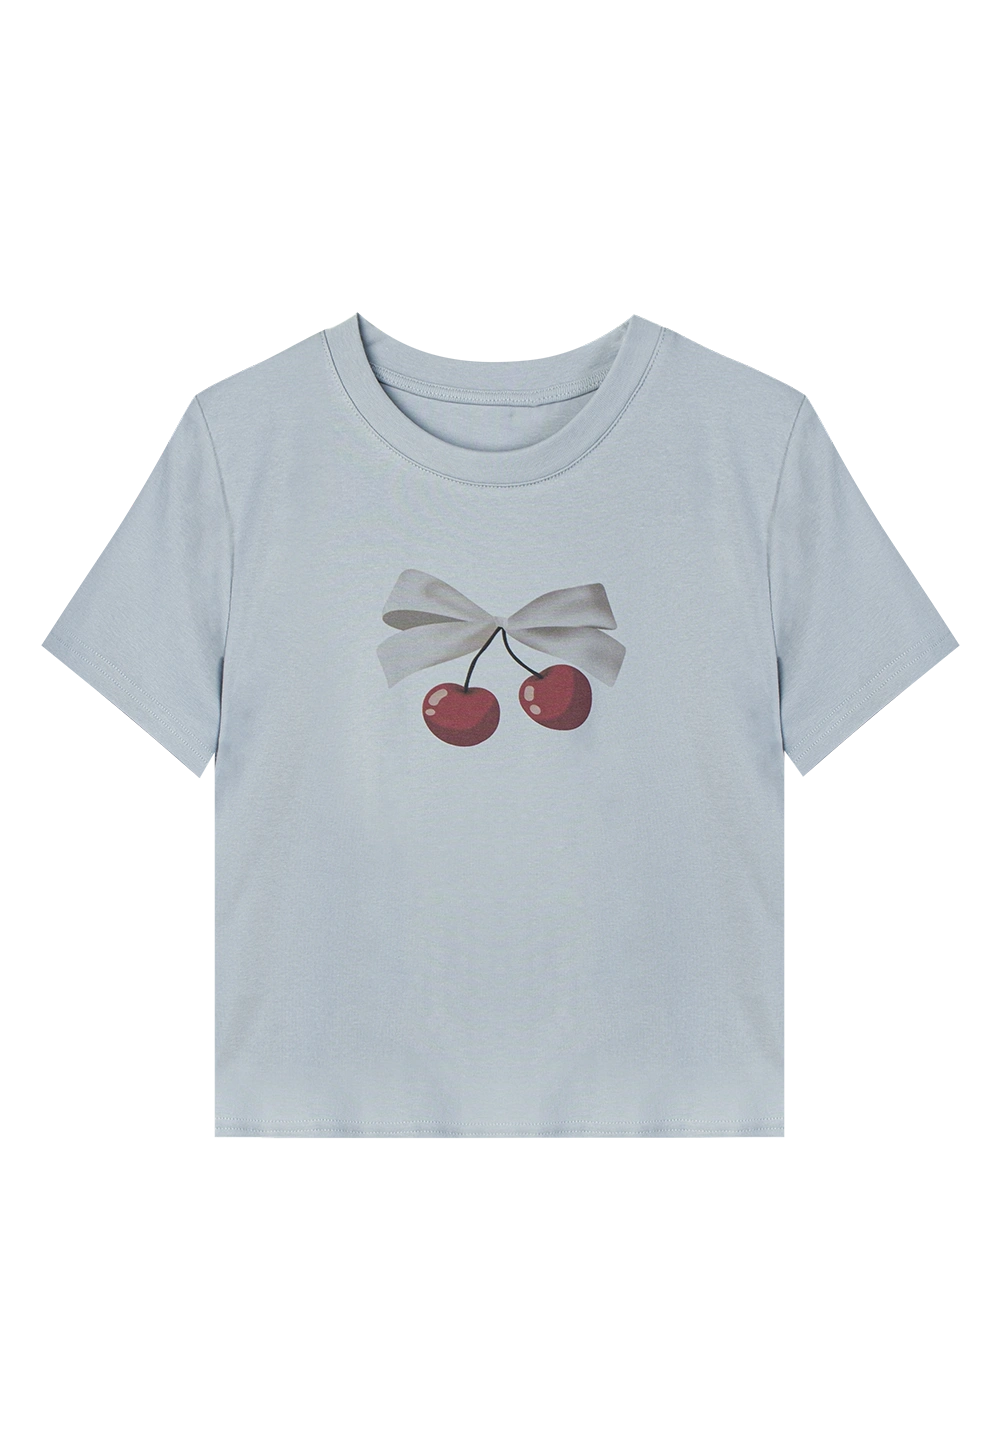 T-Shirt Cetakan Cherry Bow Comel untuk Hari Musim Panas Kasual